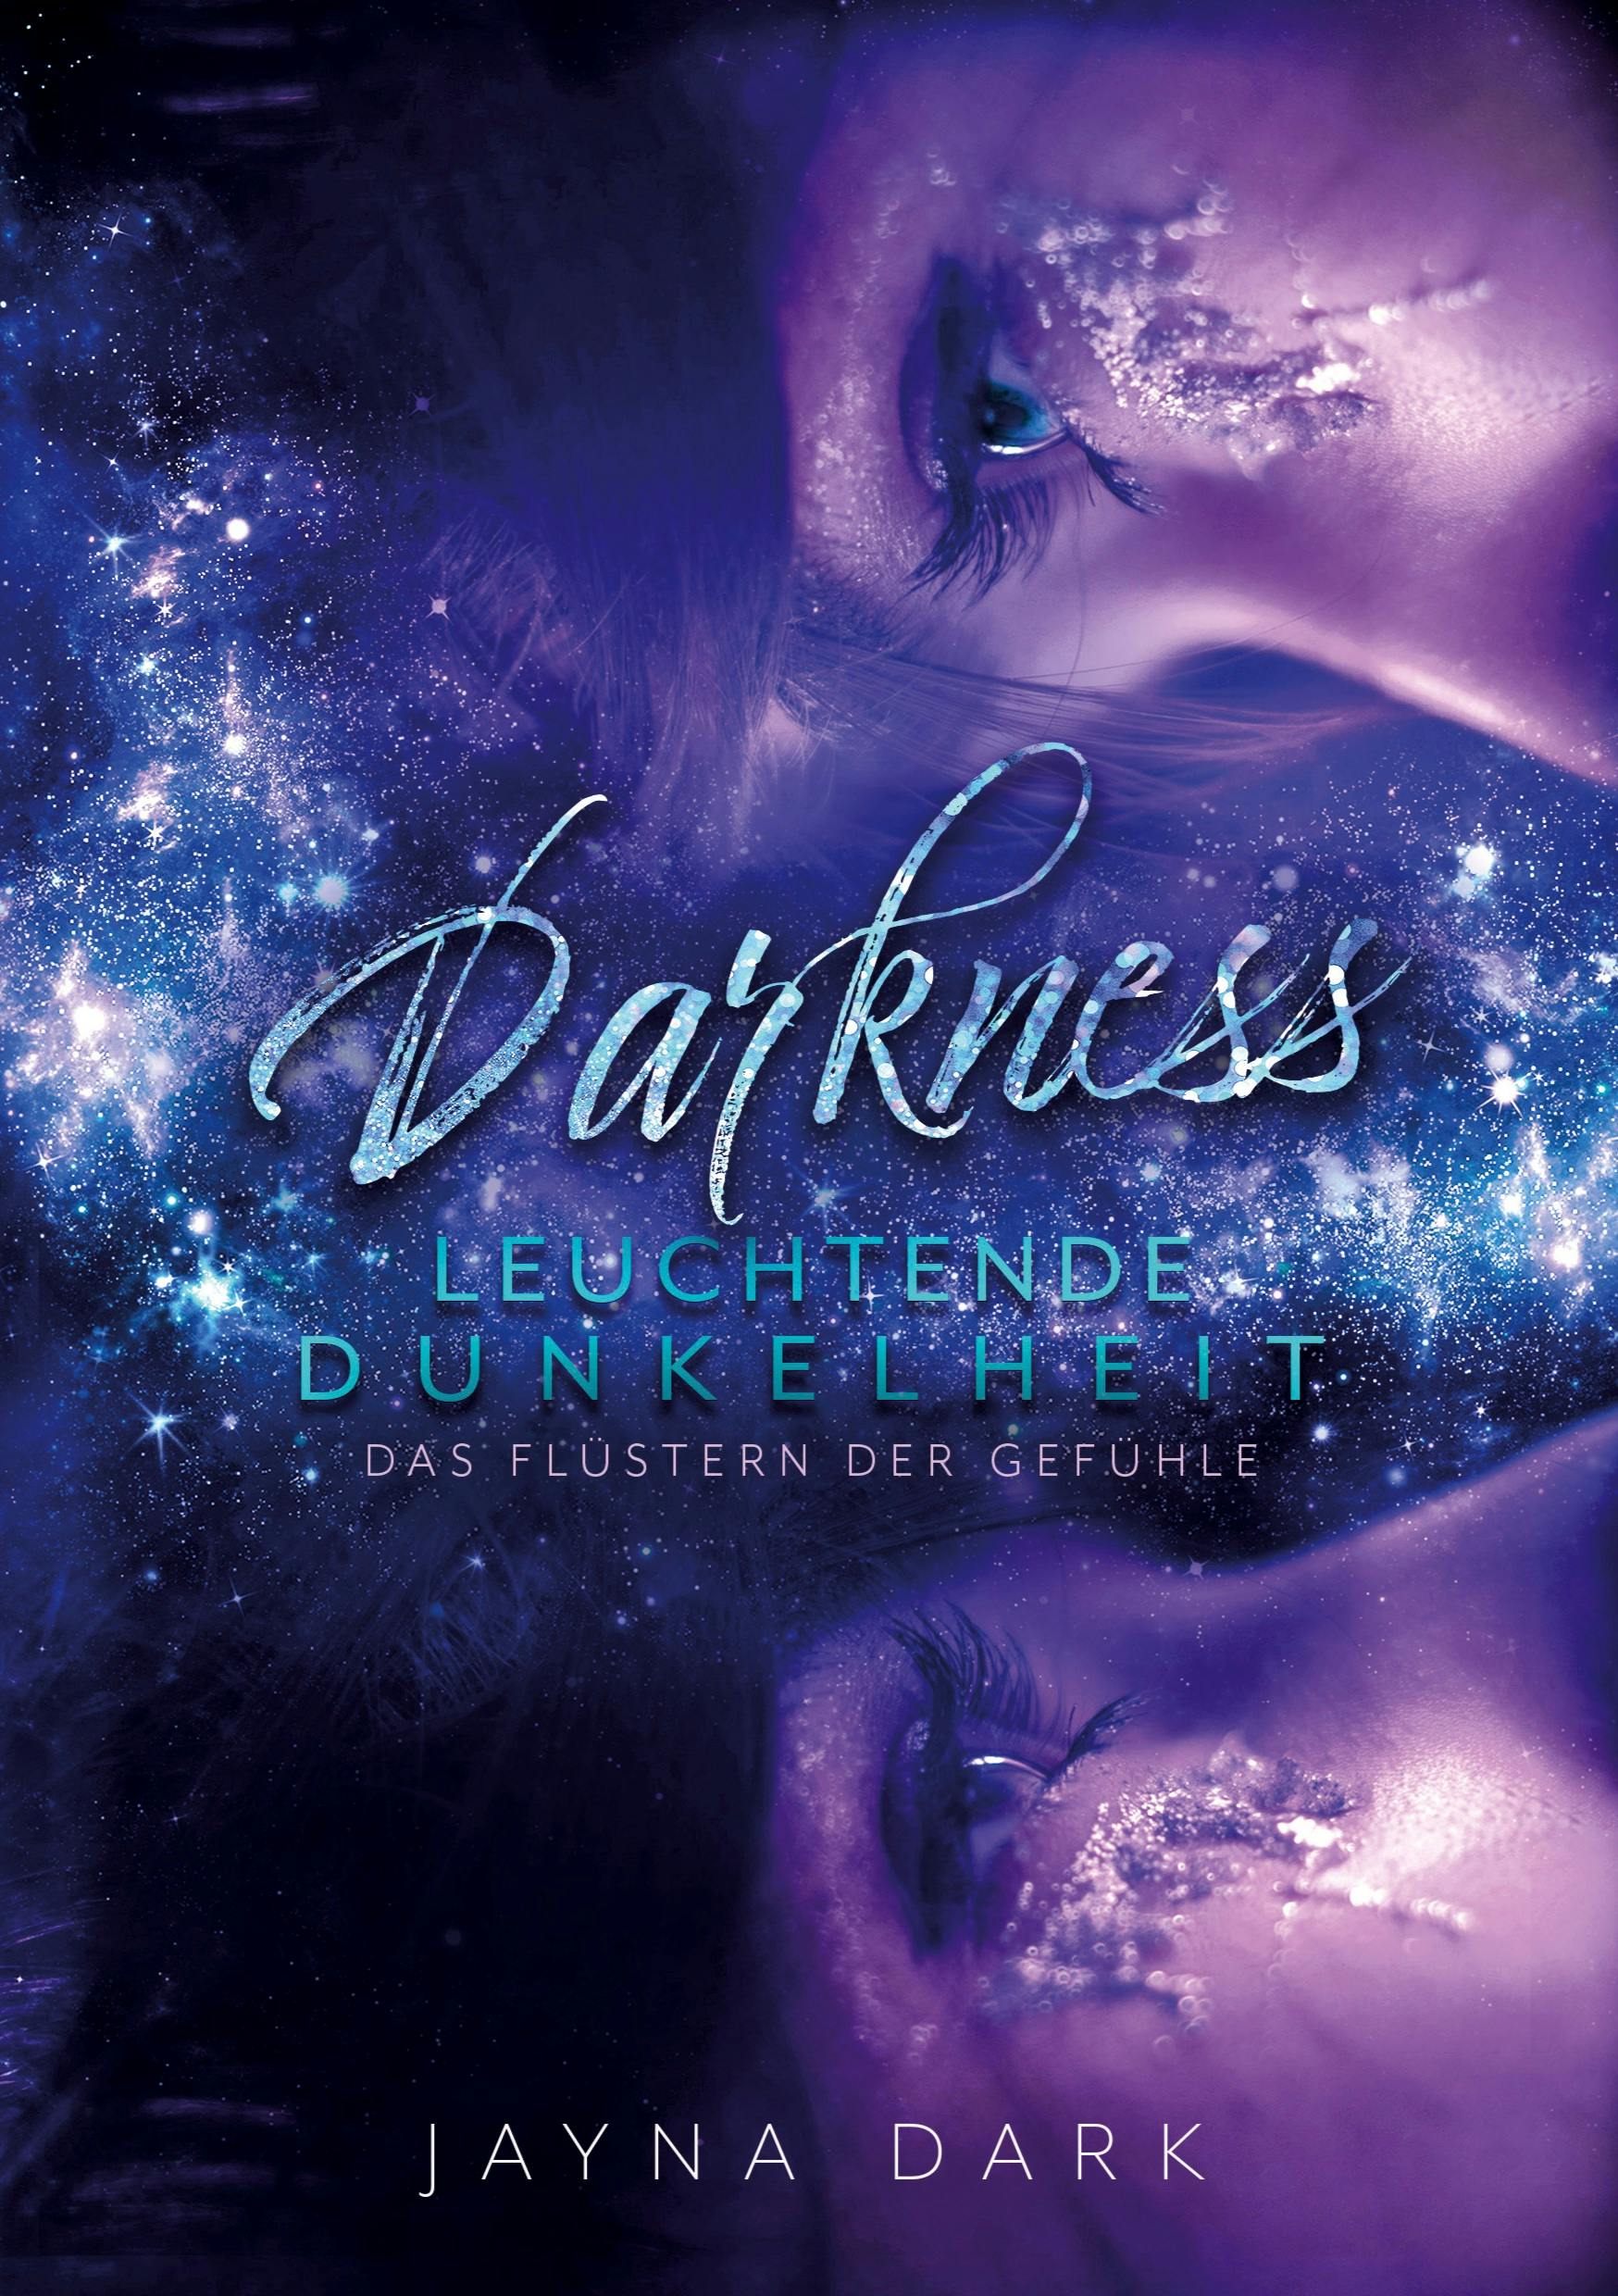 Darkness - Leuchtende Dunkelheit - undefined